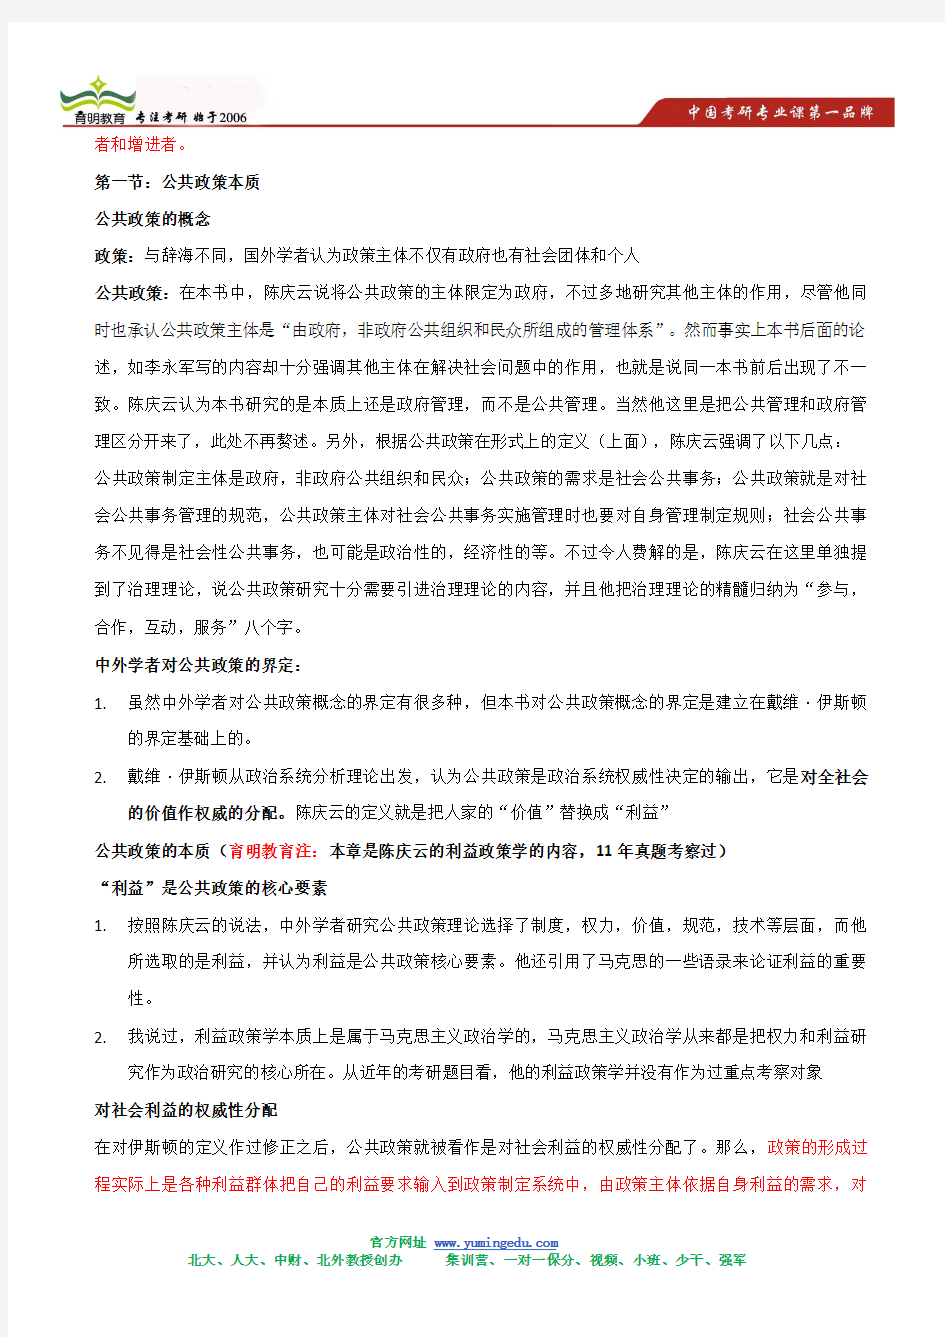 陈庆云 公共政策分析 考研笔记背诵版